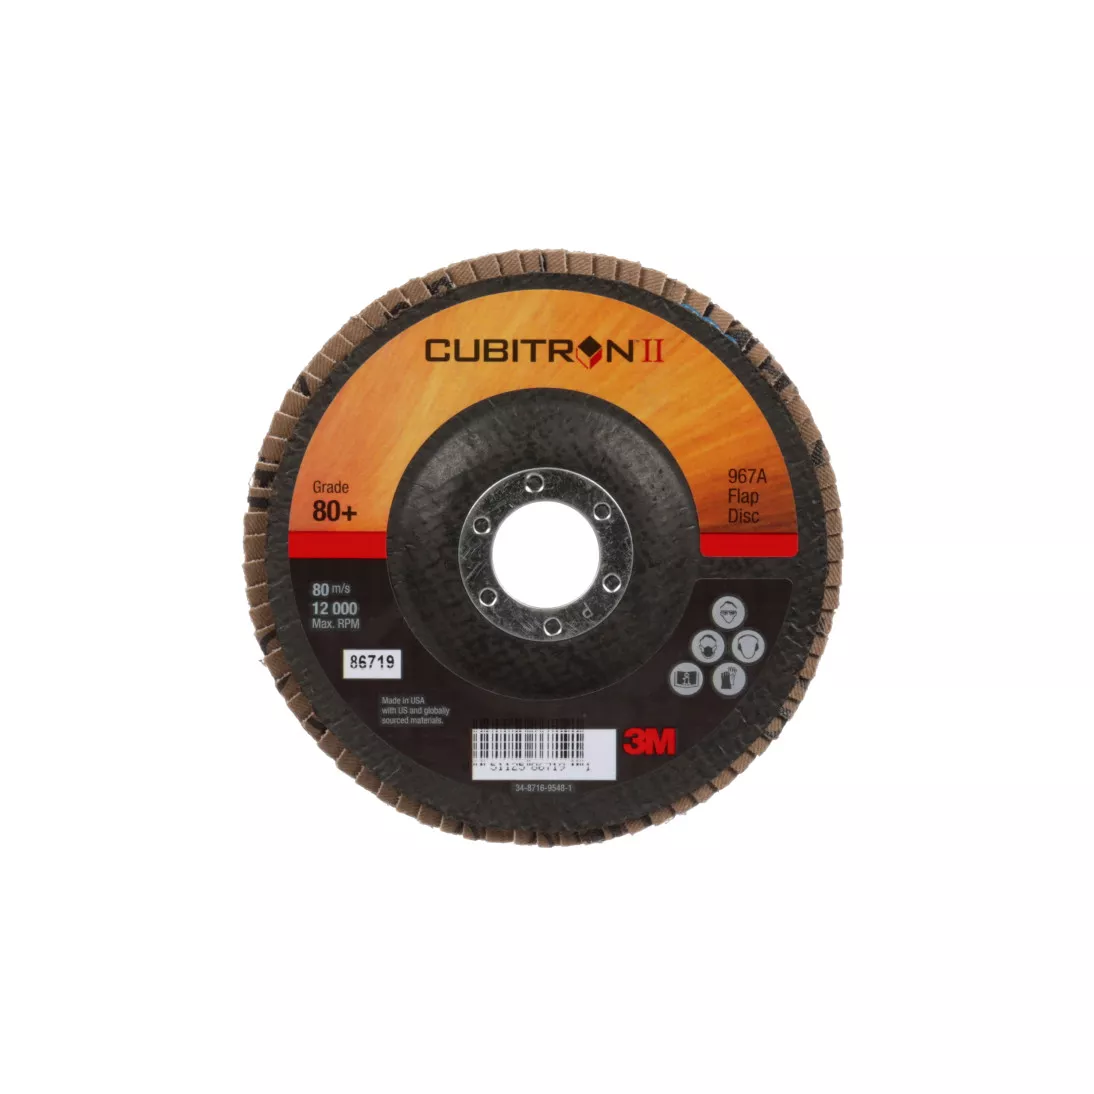 3M™ Cubitron™ II Flap Disc 967A, 80+, T27, 5 in x 7/8 in, 10 ea/Case